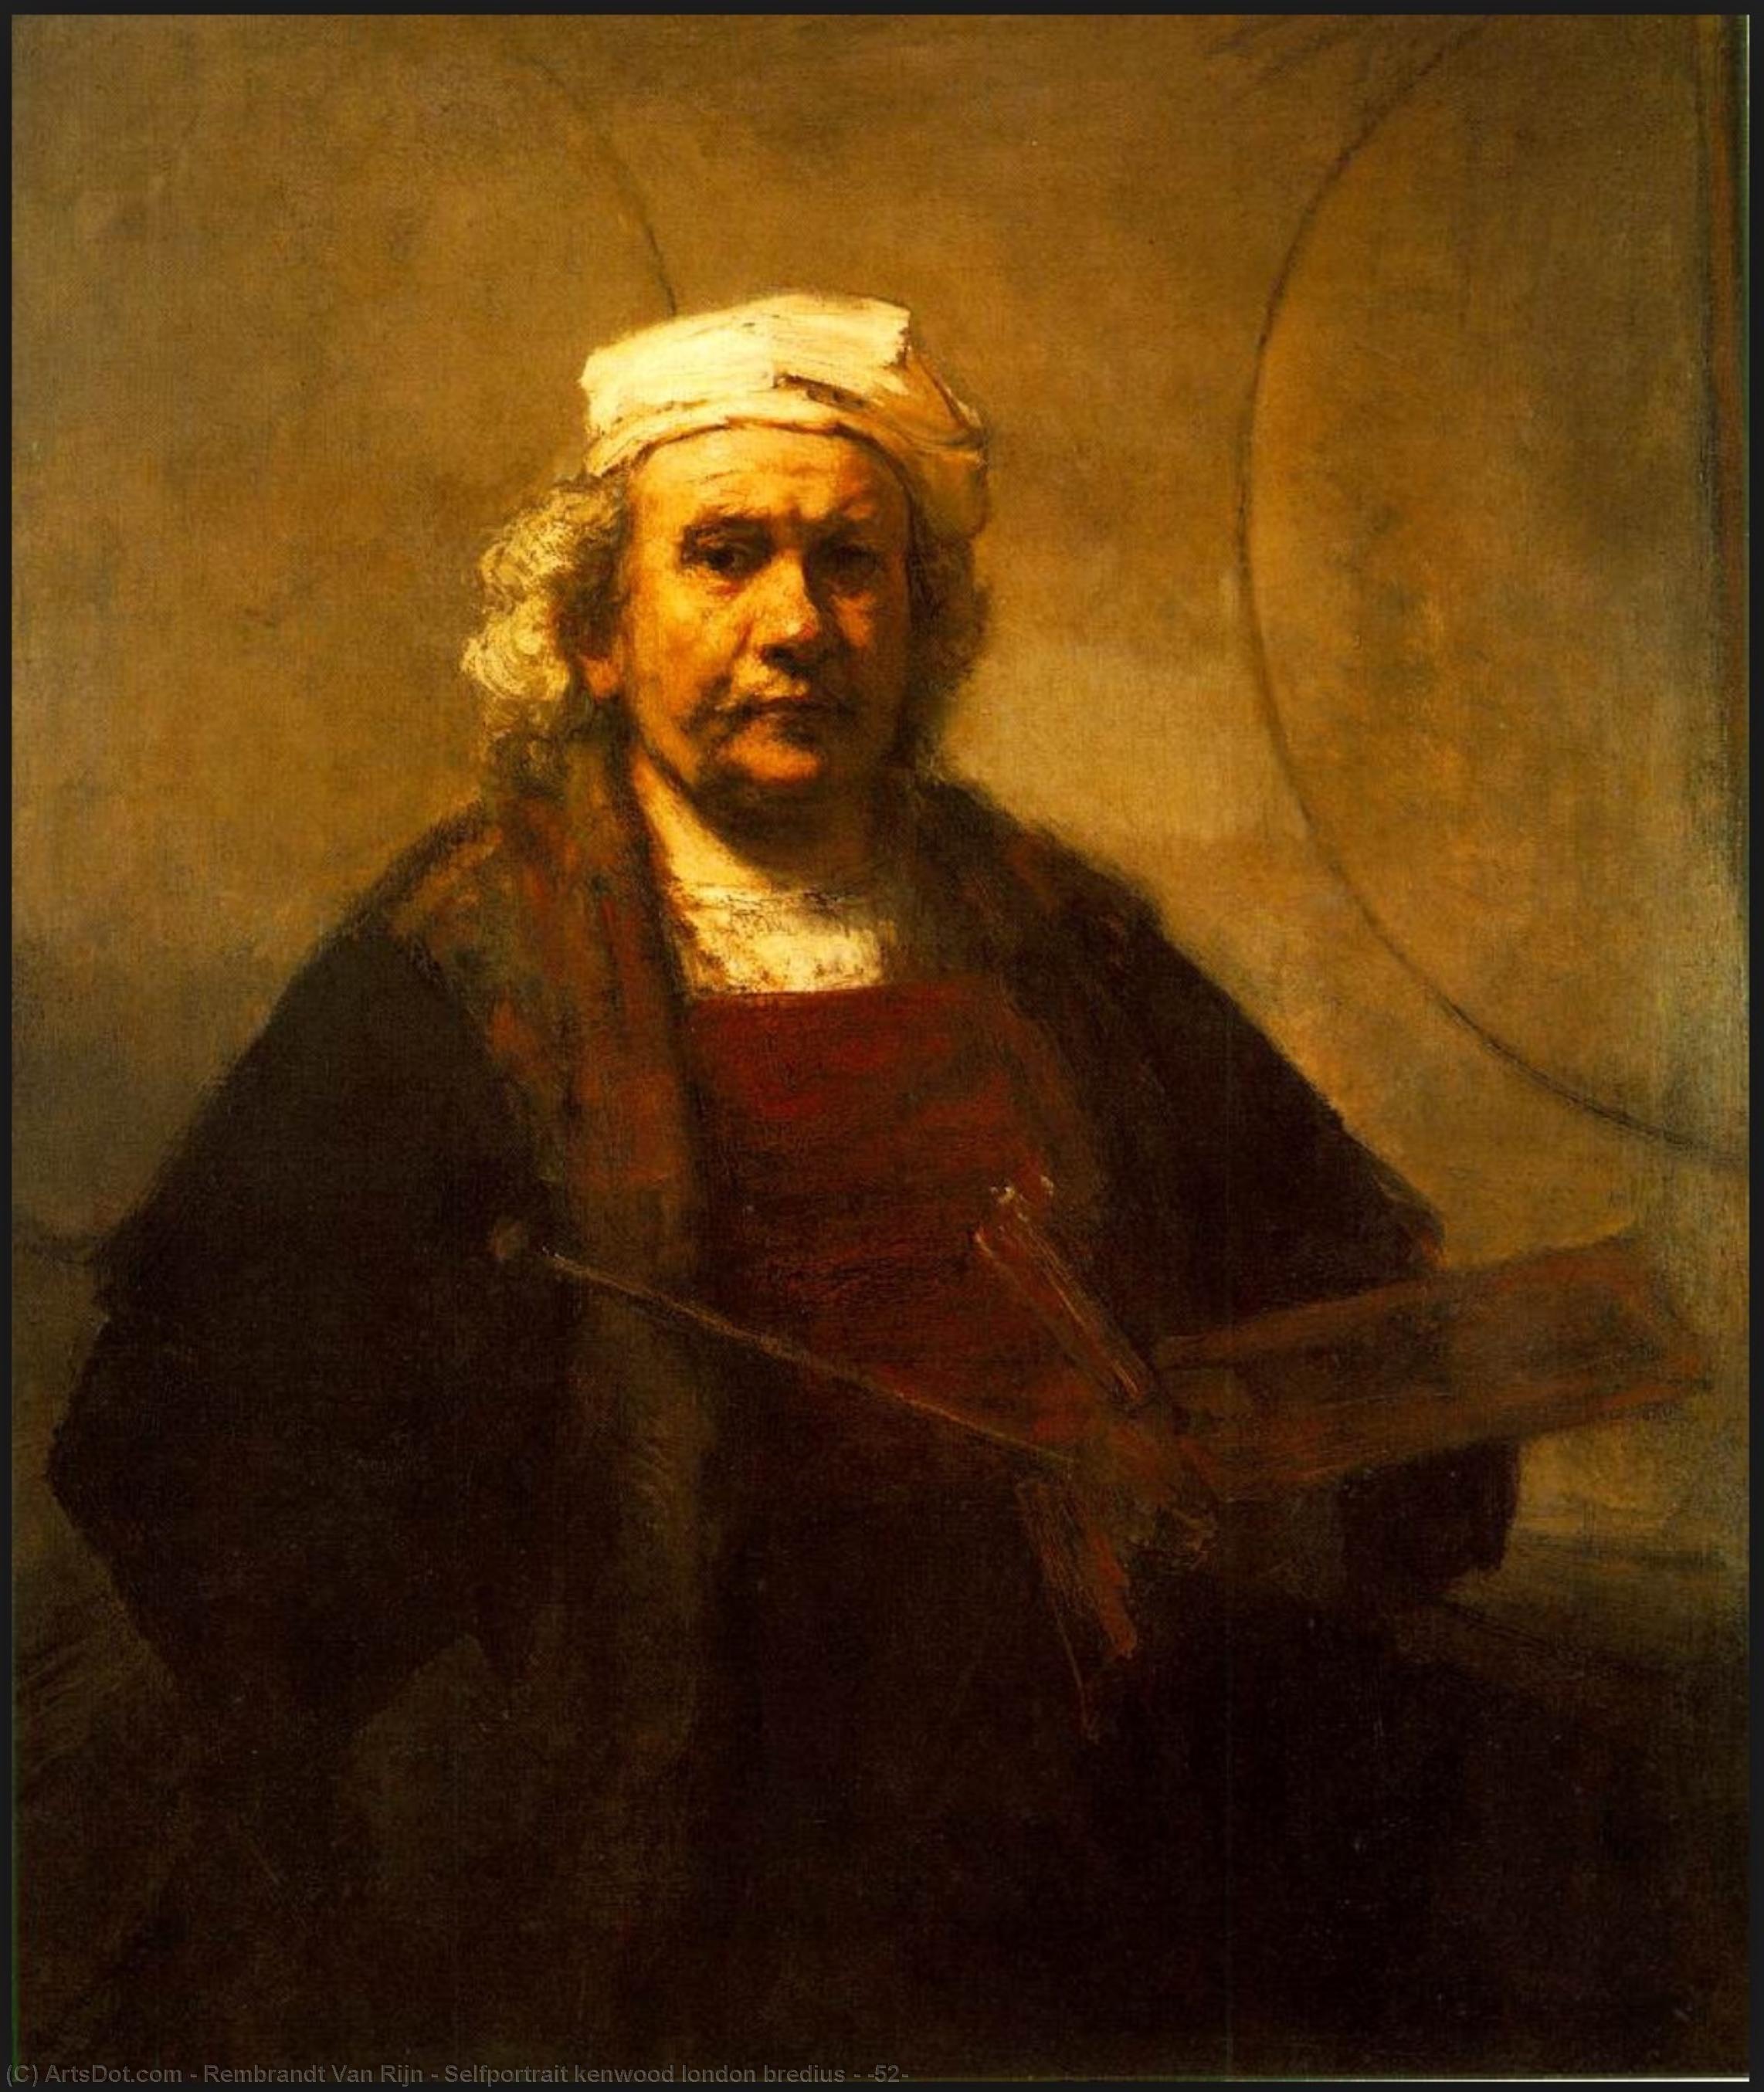 WikiOO.org - Enciclopedia of Fine Arts - Pictura, lucrări de artă Rembrandt Van Rijn - Selfportrait kenwood london bredius - (52)